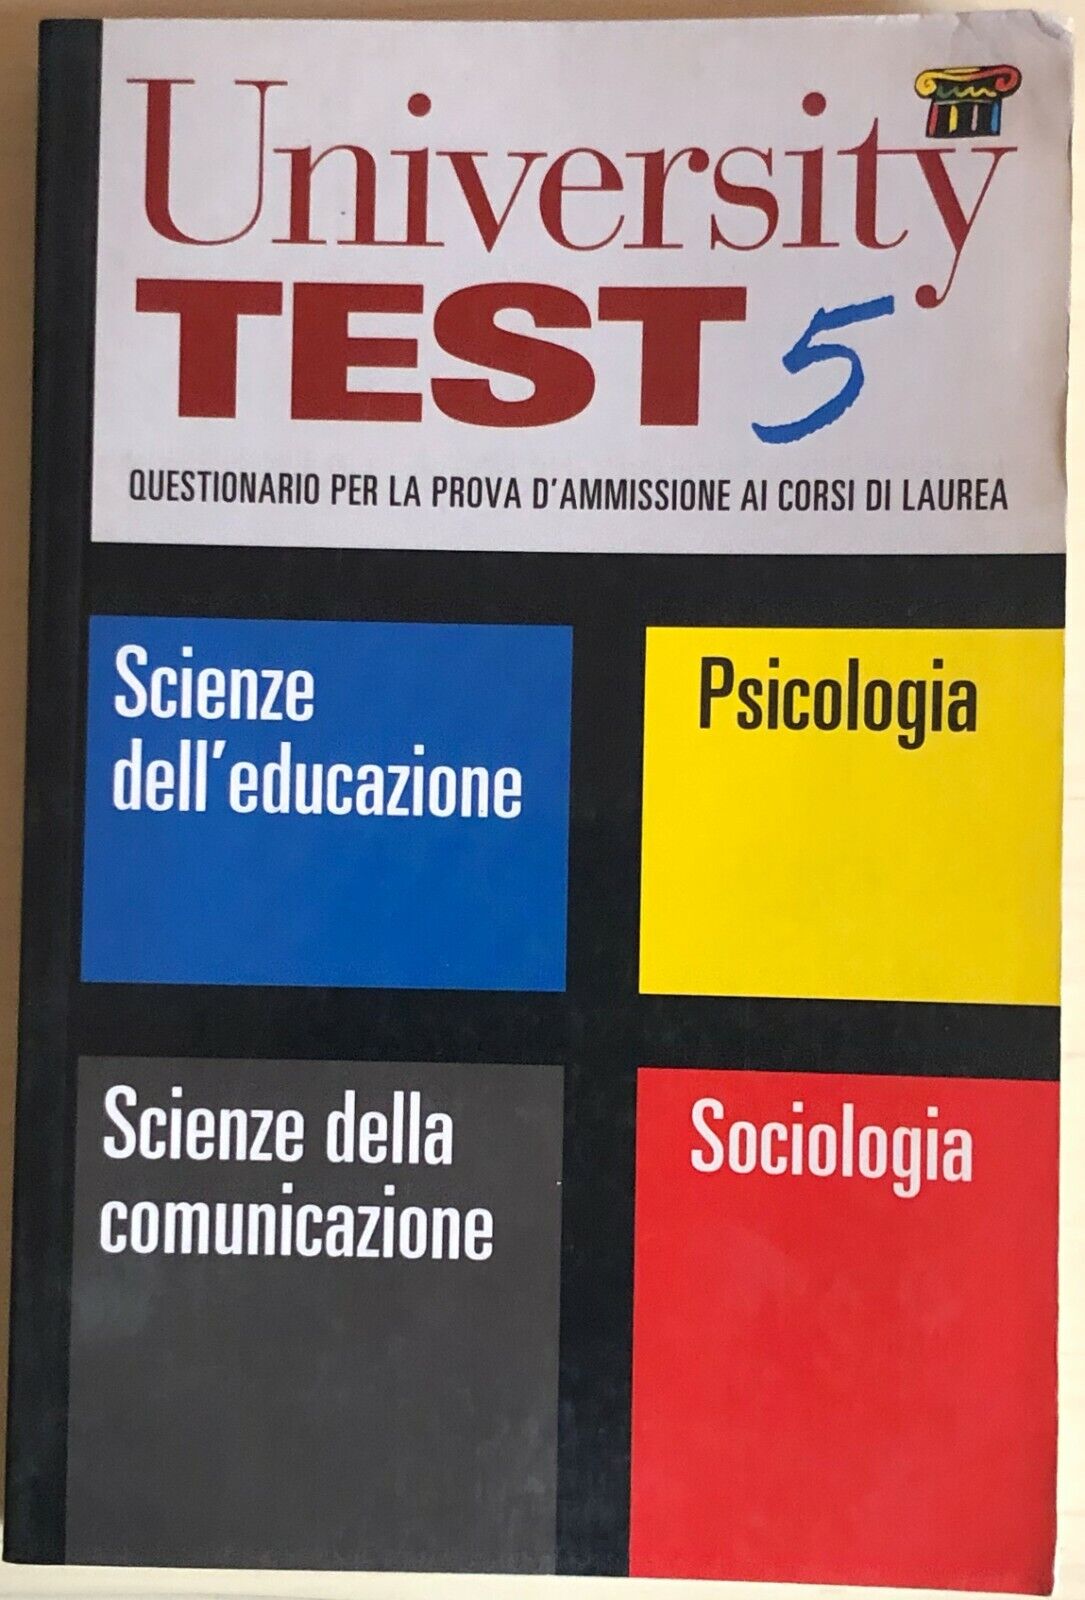 University test 5 di AA.VV., 1999, Raffaello Cortina Editore